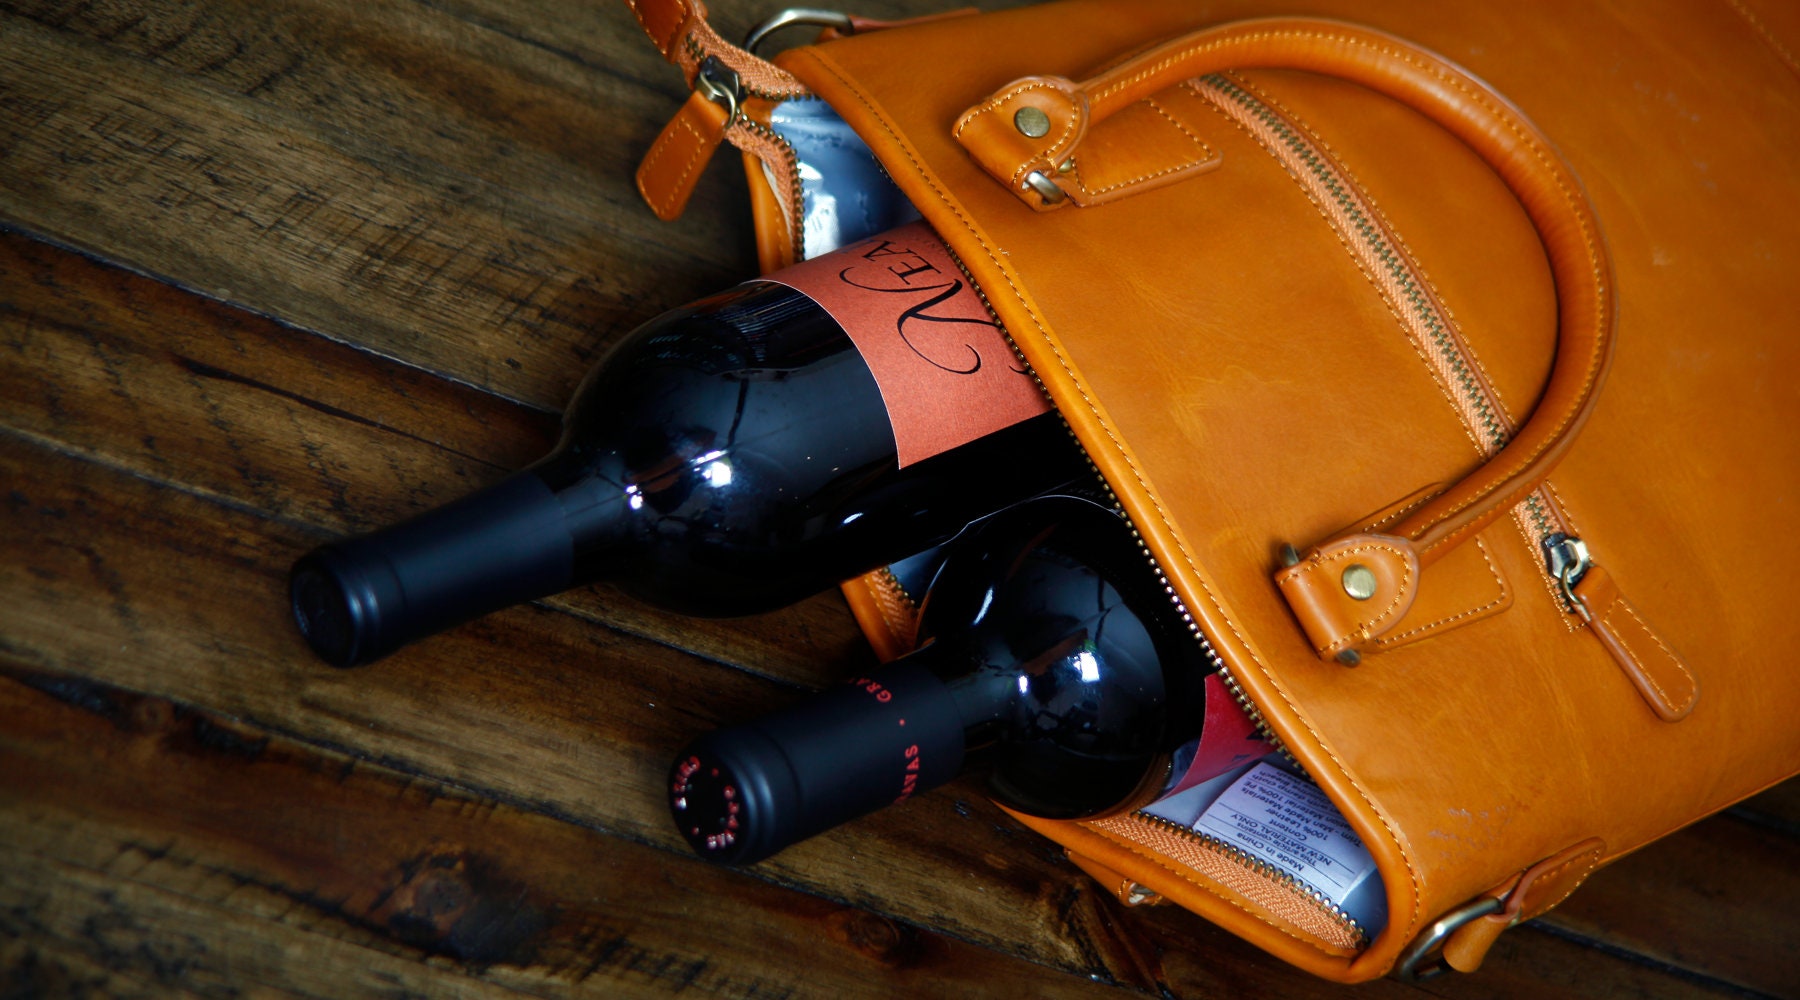 LOUIS VUITTON Natural Leather PORTE-BOUTEILLES Wine Bottle Bag at 1stDibs   louis vuitton bottle bag, lv wine bag, louis vuitton wine bottle carrier